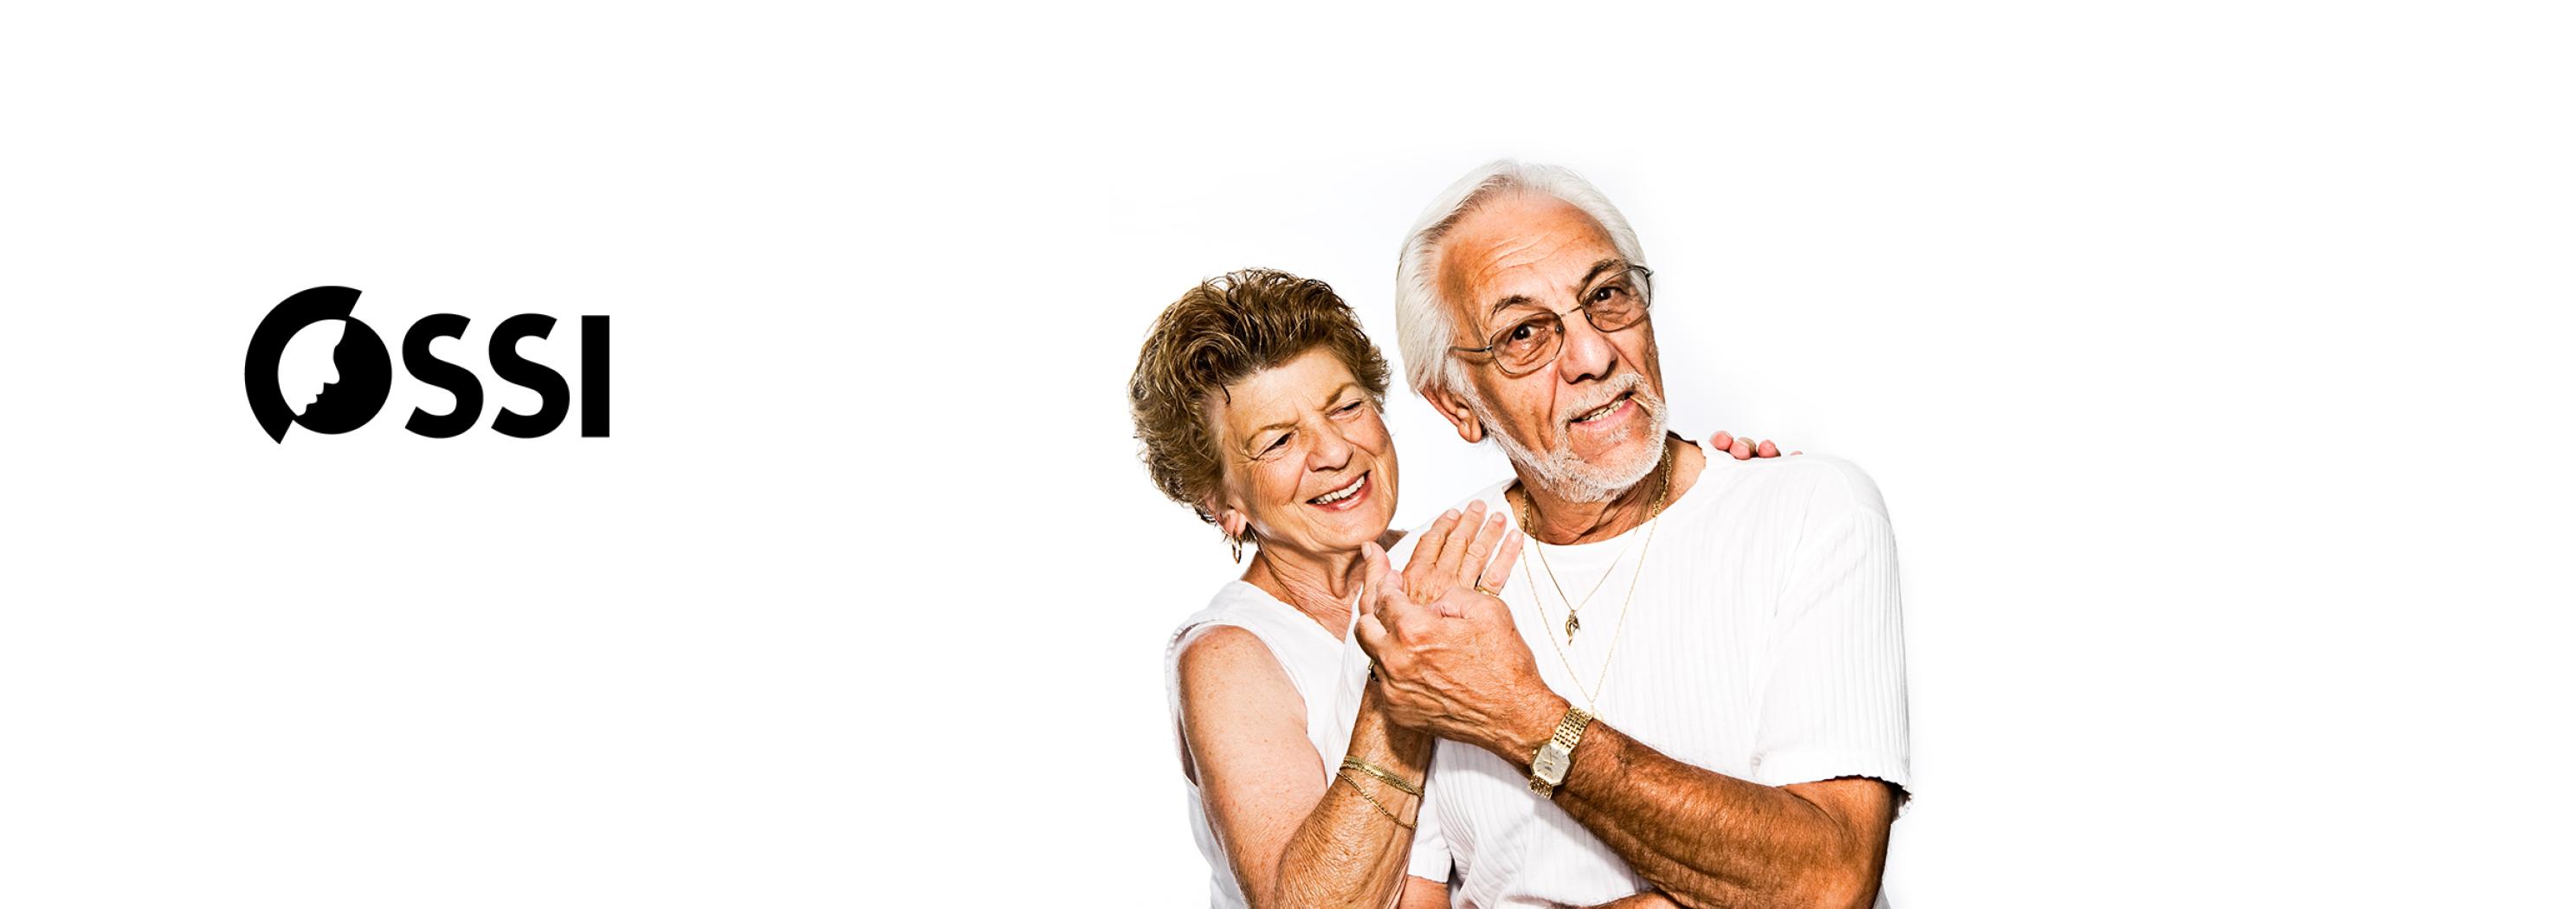 Zwei älteren Personen, die sich glücklich umarmen.